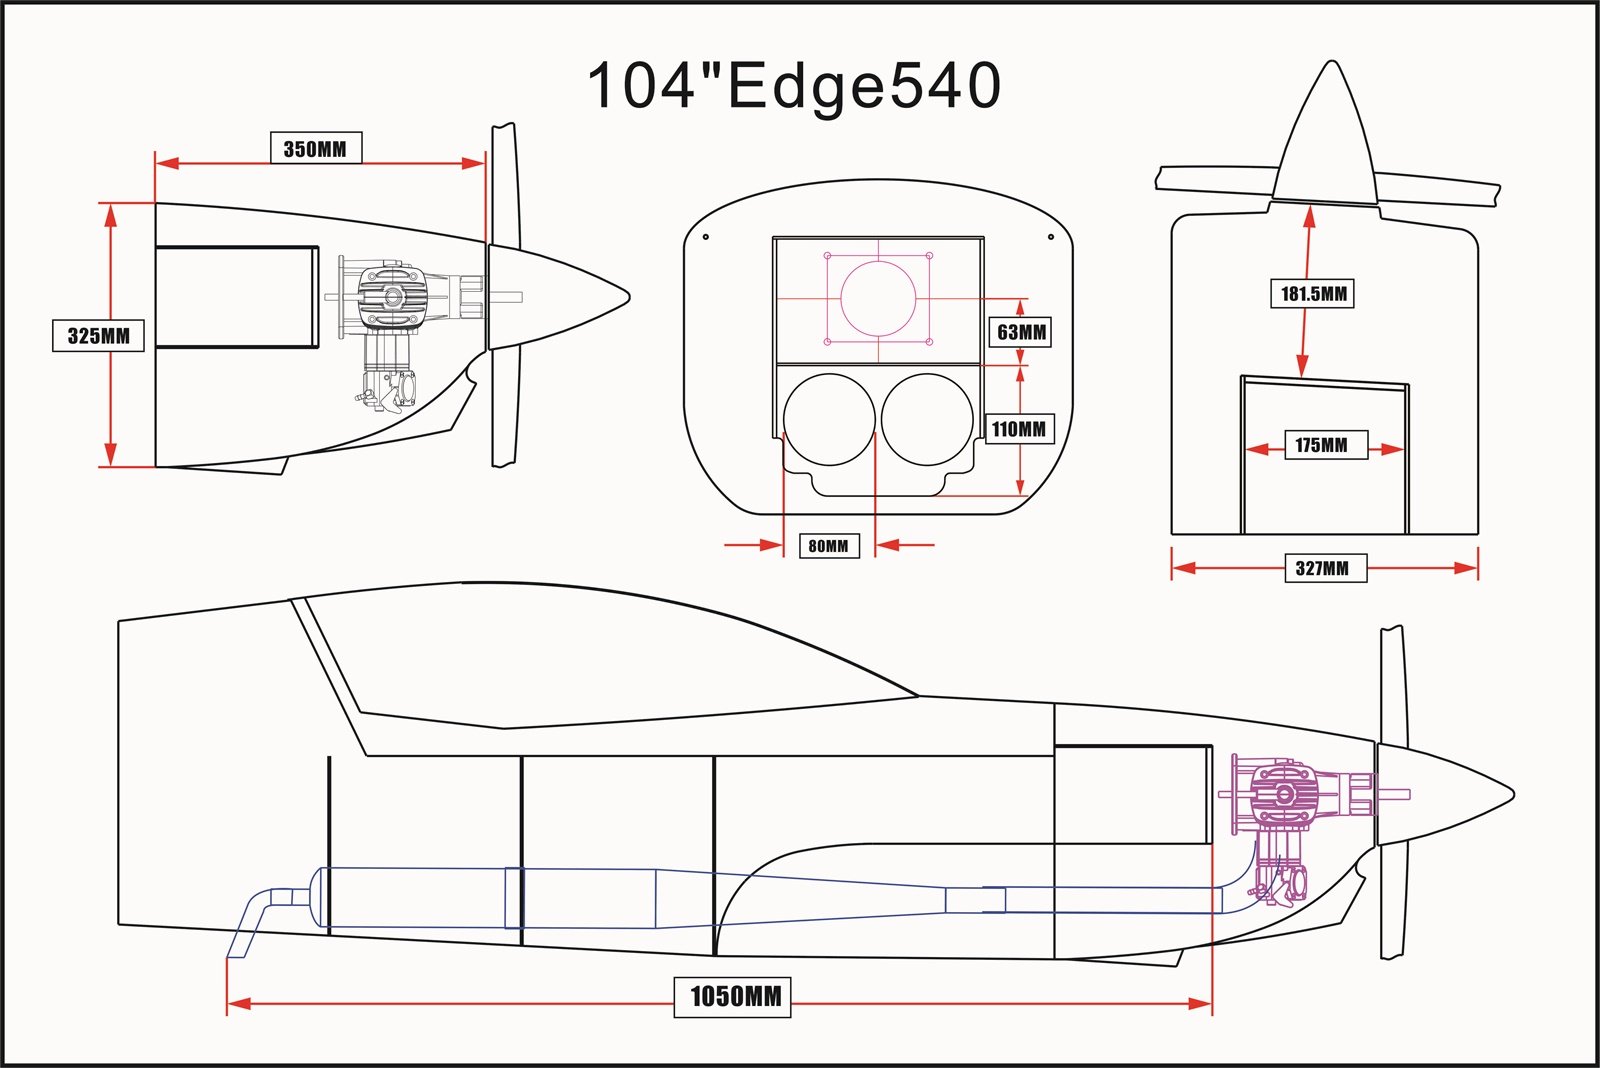 Edge 540 - 104 V3 - gelb/grau/weiß - F